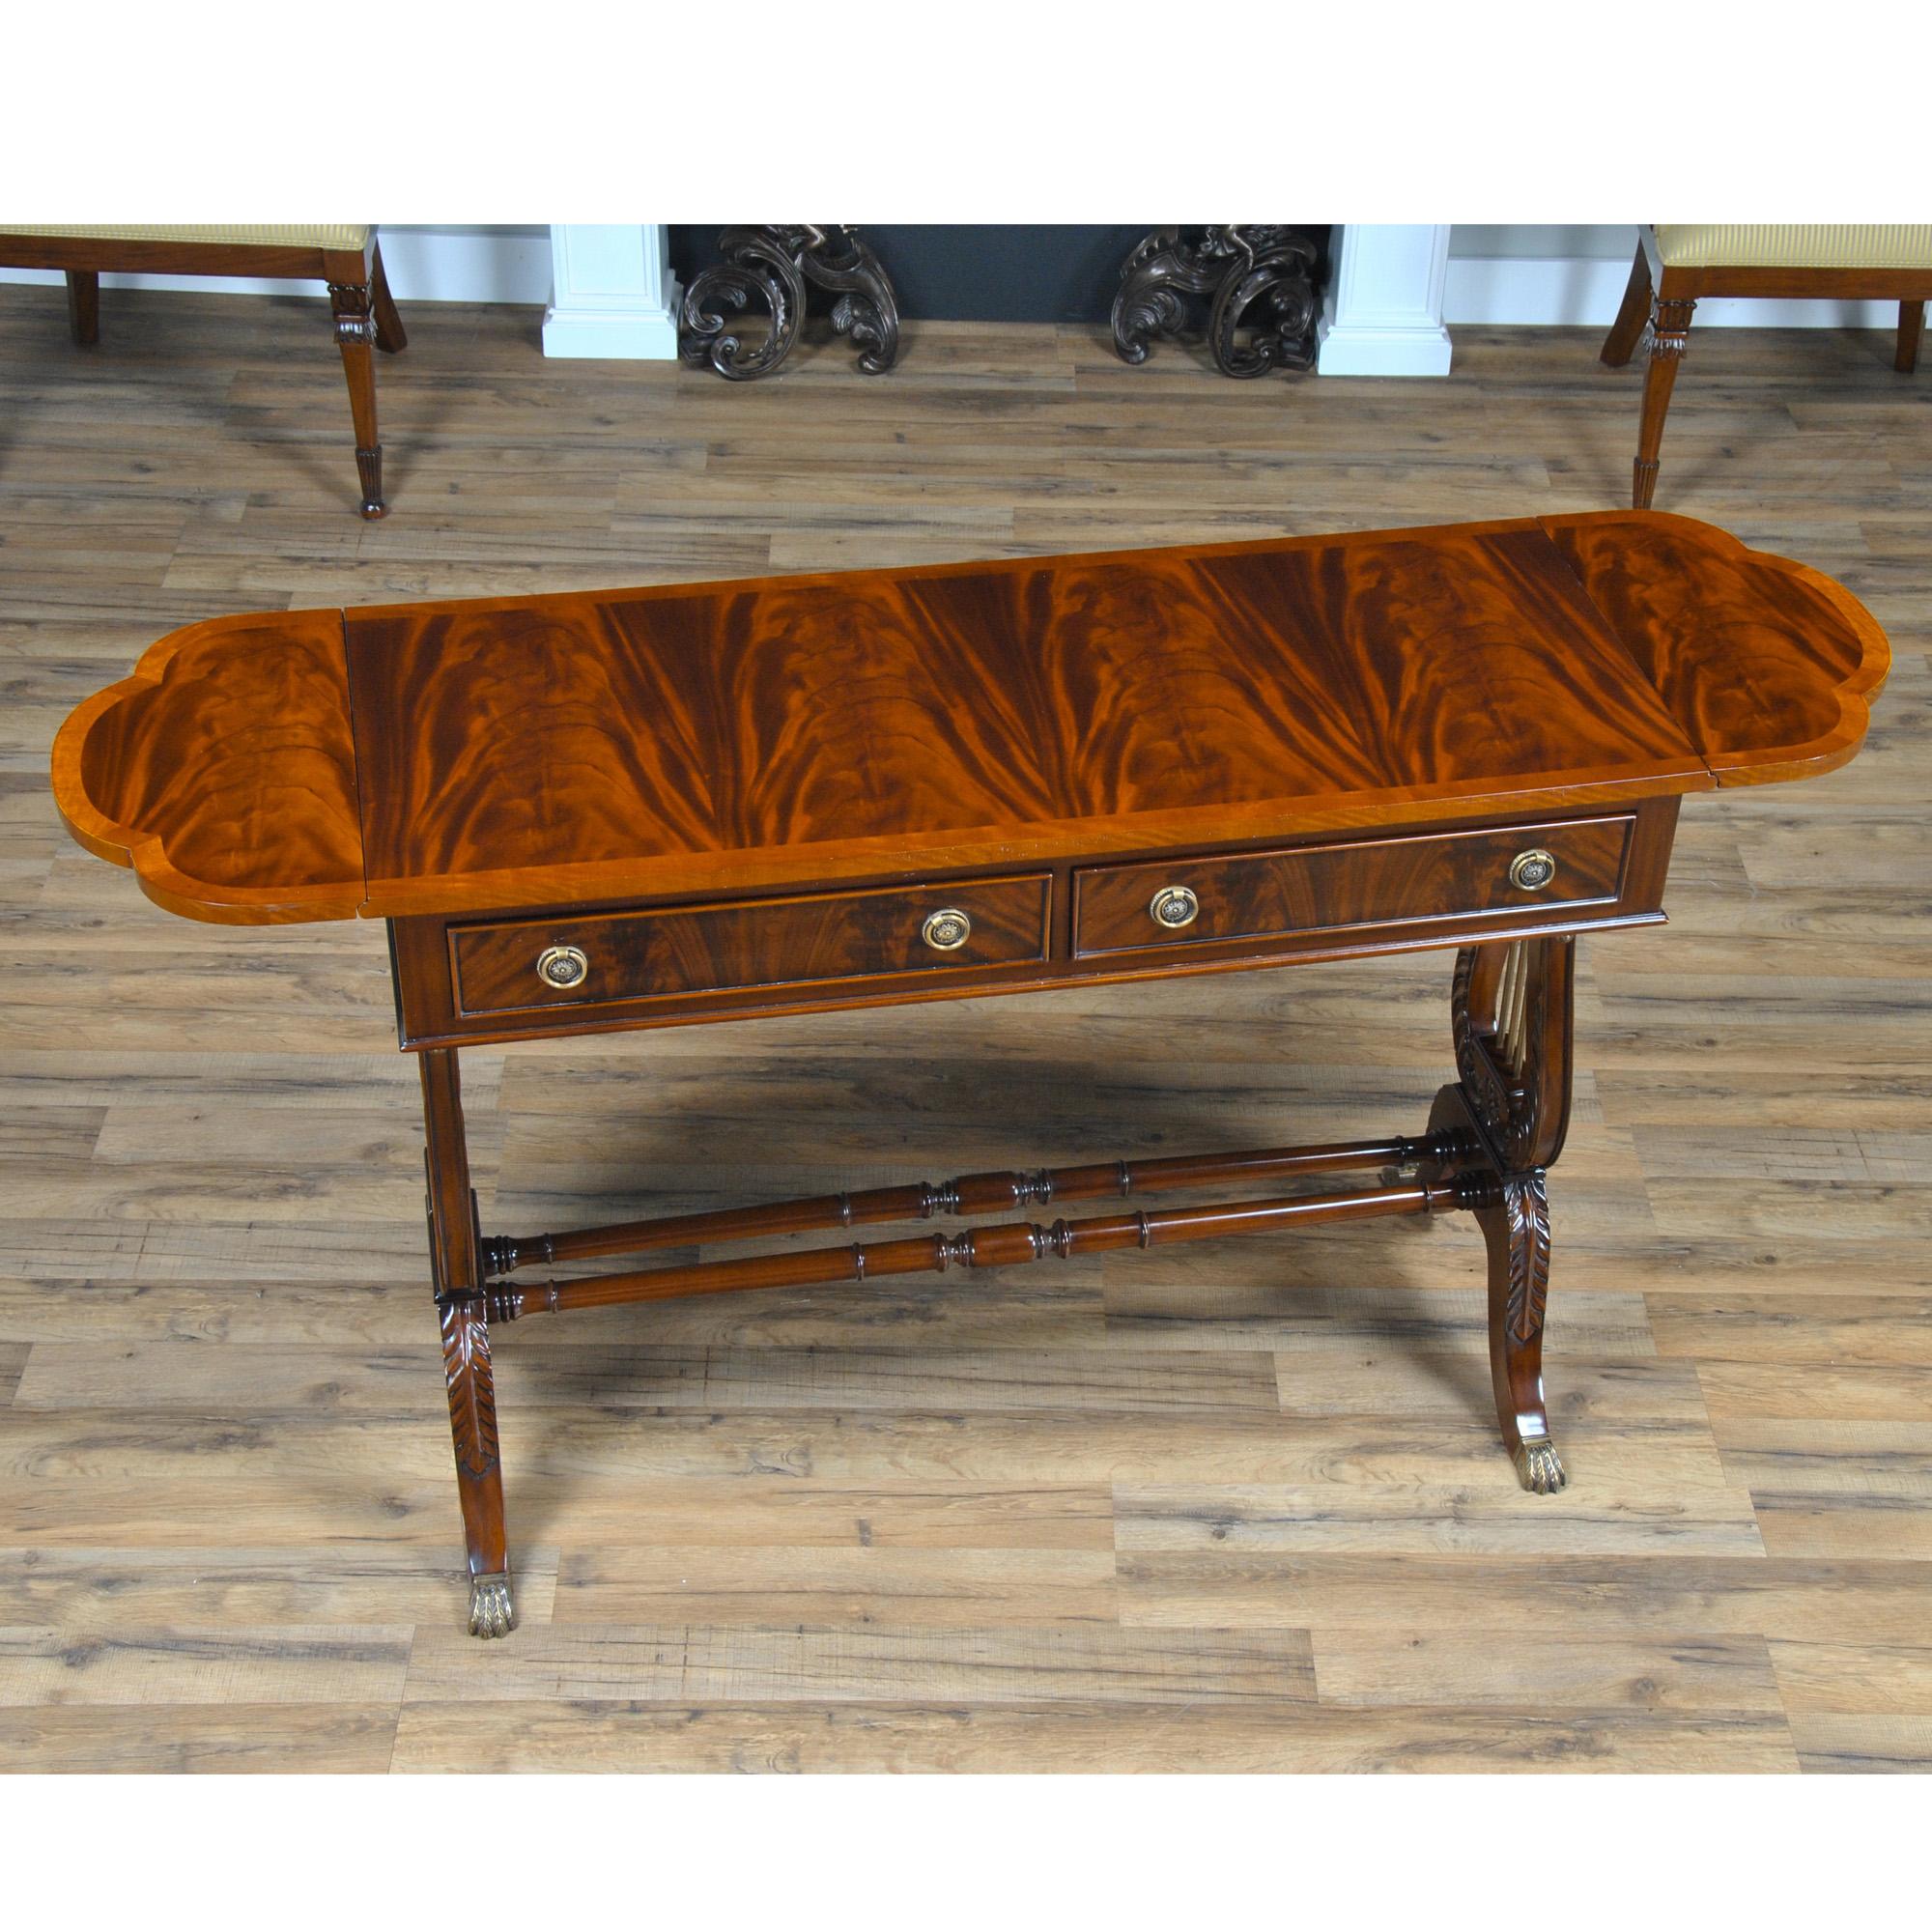 Voici un autre article de la collection lyre de Niagara Furniture, notre Dropside Sofa Table a un plateau magnifiquement travaillé avec de l'acajou figuré et du bois de satin, le tout coupé et assemblé à la main par des artisans qualifiés. La table